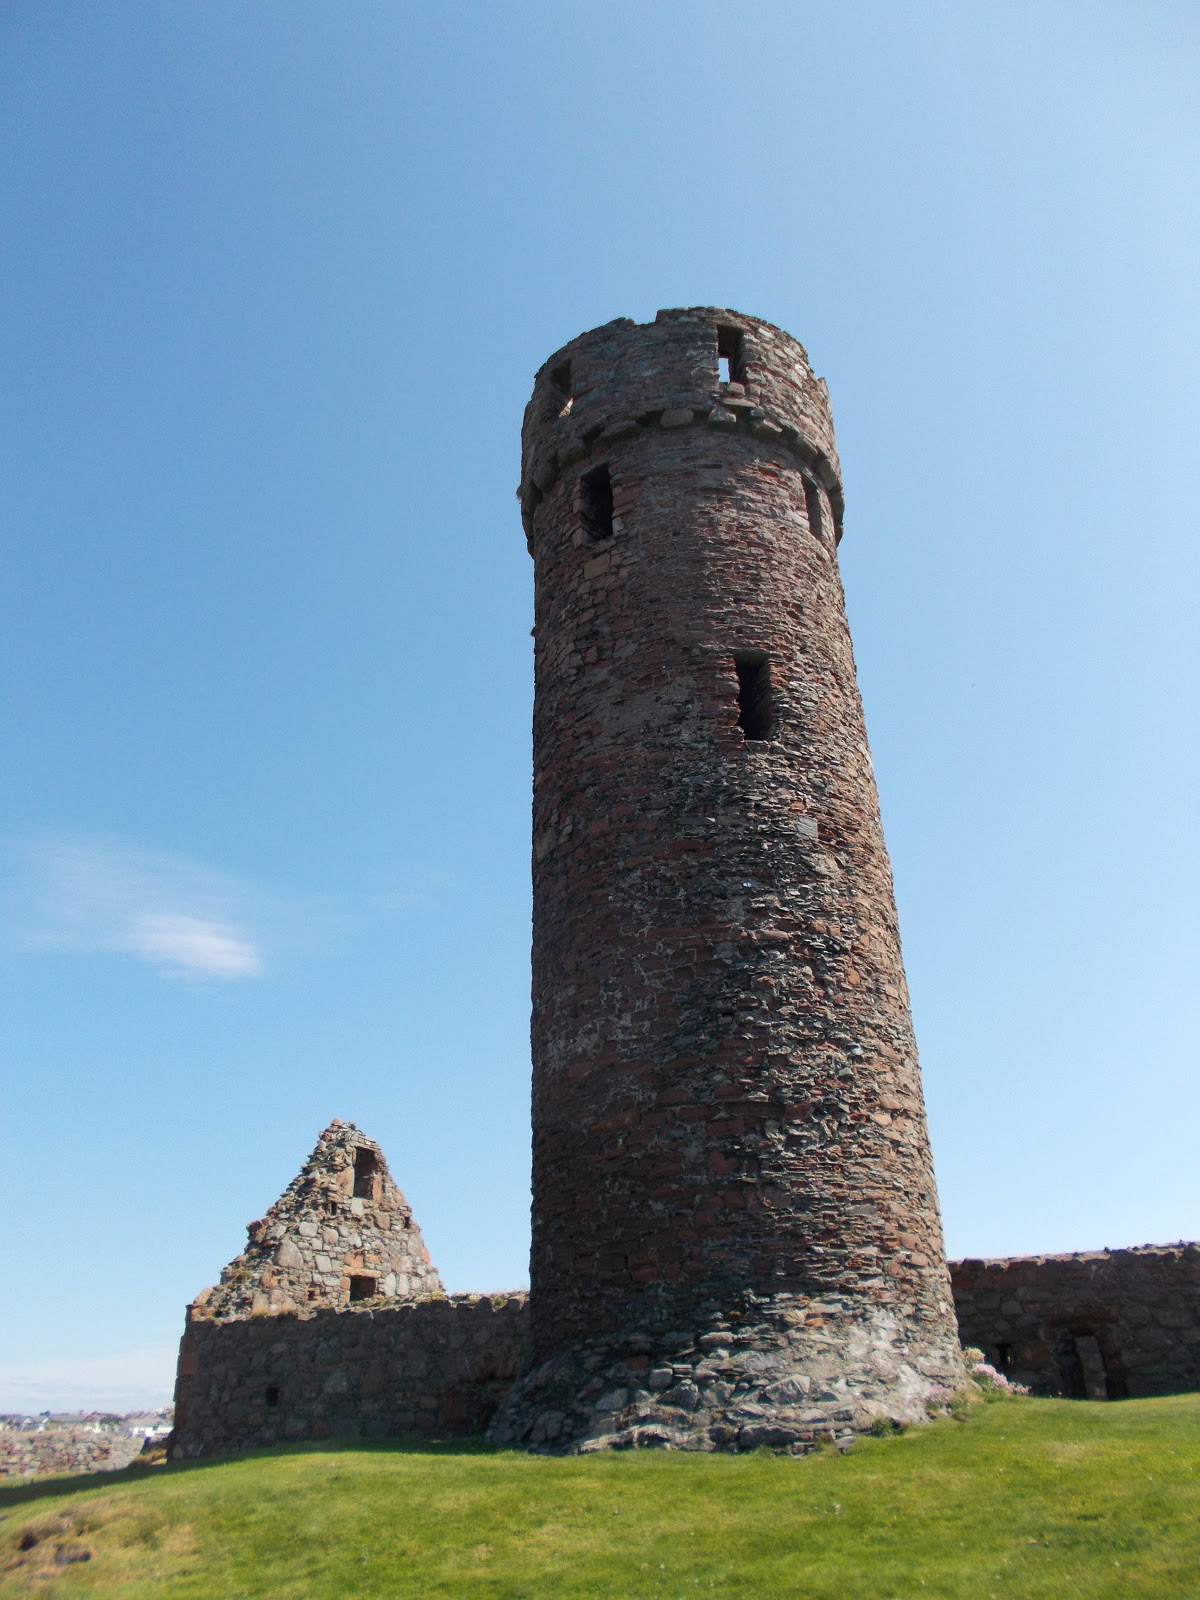 Round tower. Остров Мэн Форт сент-Эннз. Жаорцы с круглыми башнями. Замок с круглыми башнями. Круглая башня в вальхуйме.